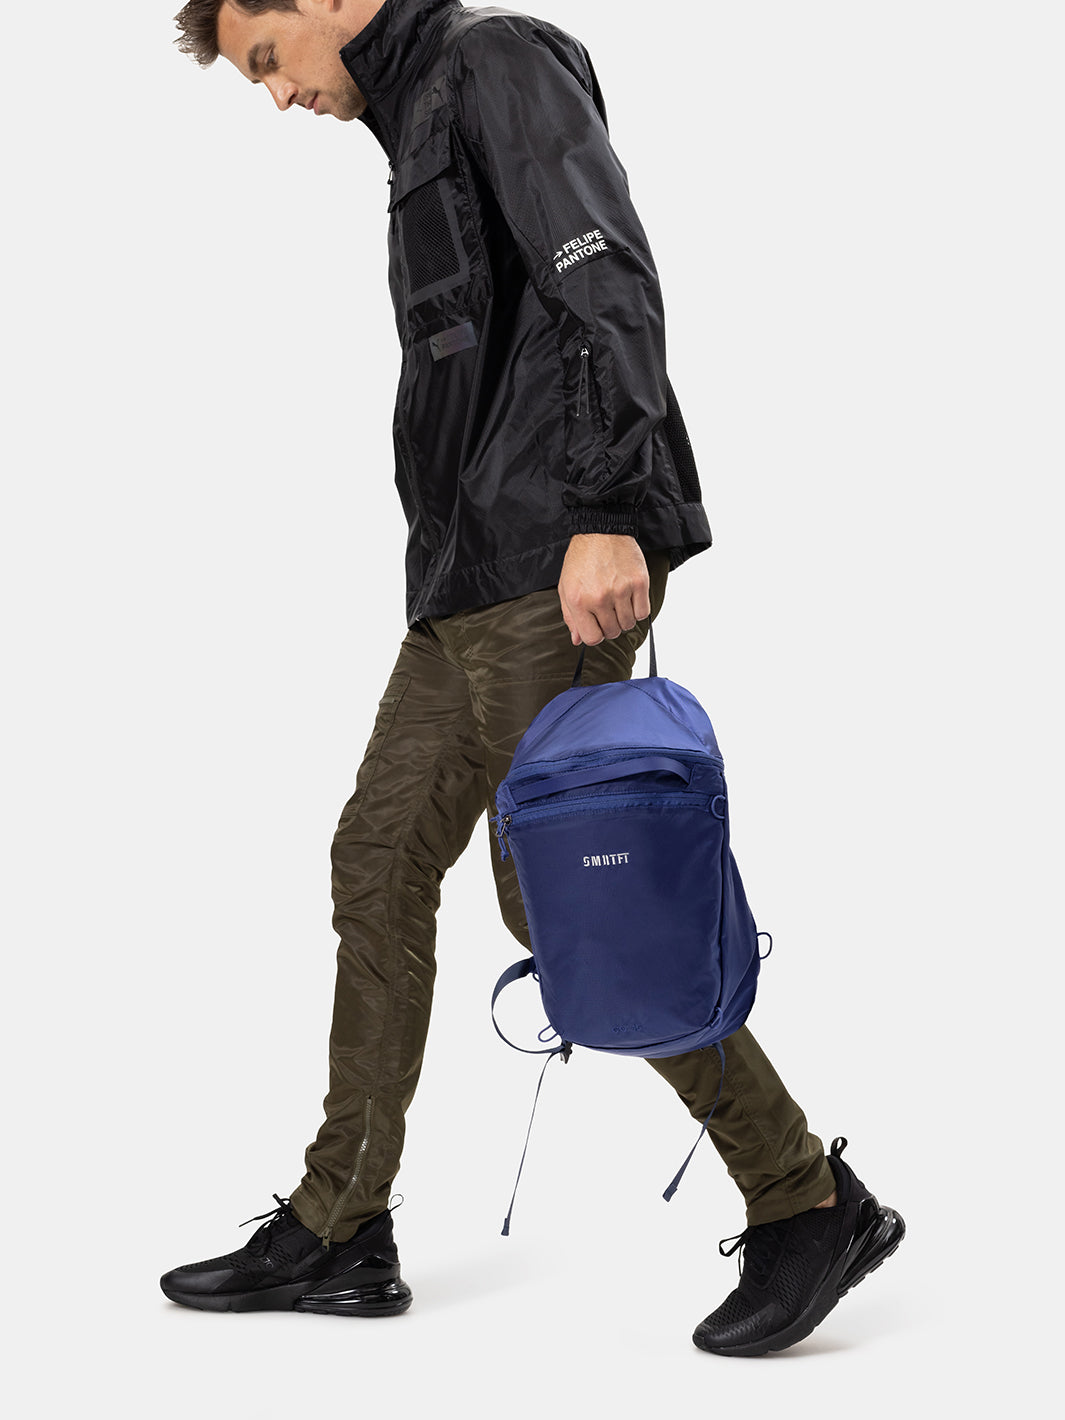 Blue Backpacks For Men at SMRTFT | Blue Navy Backpack